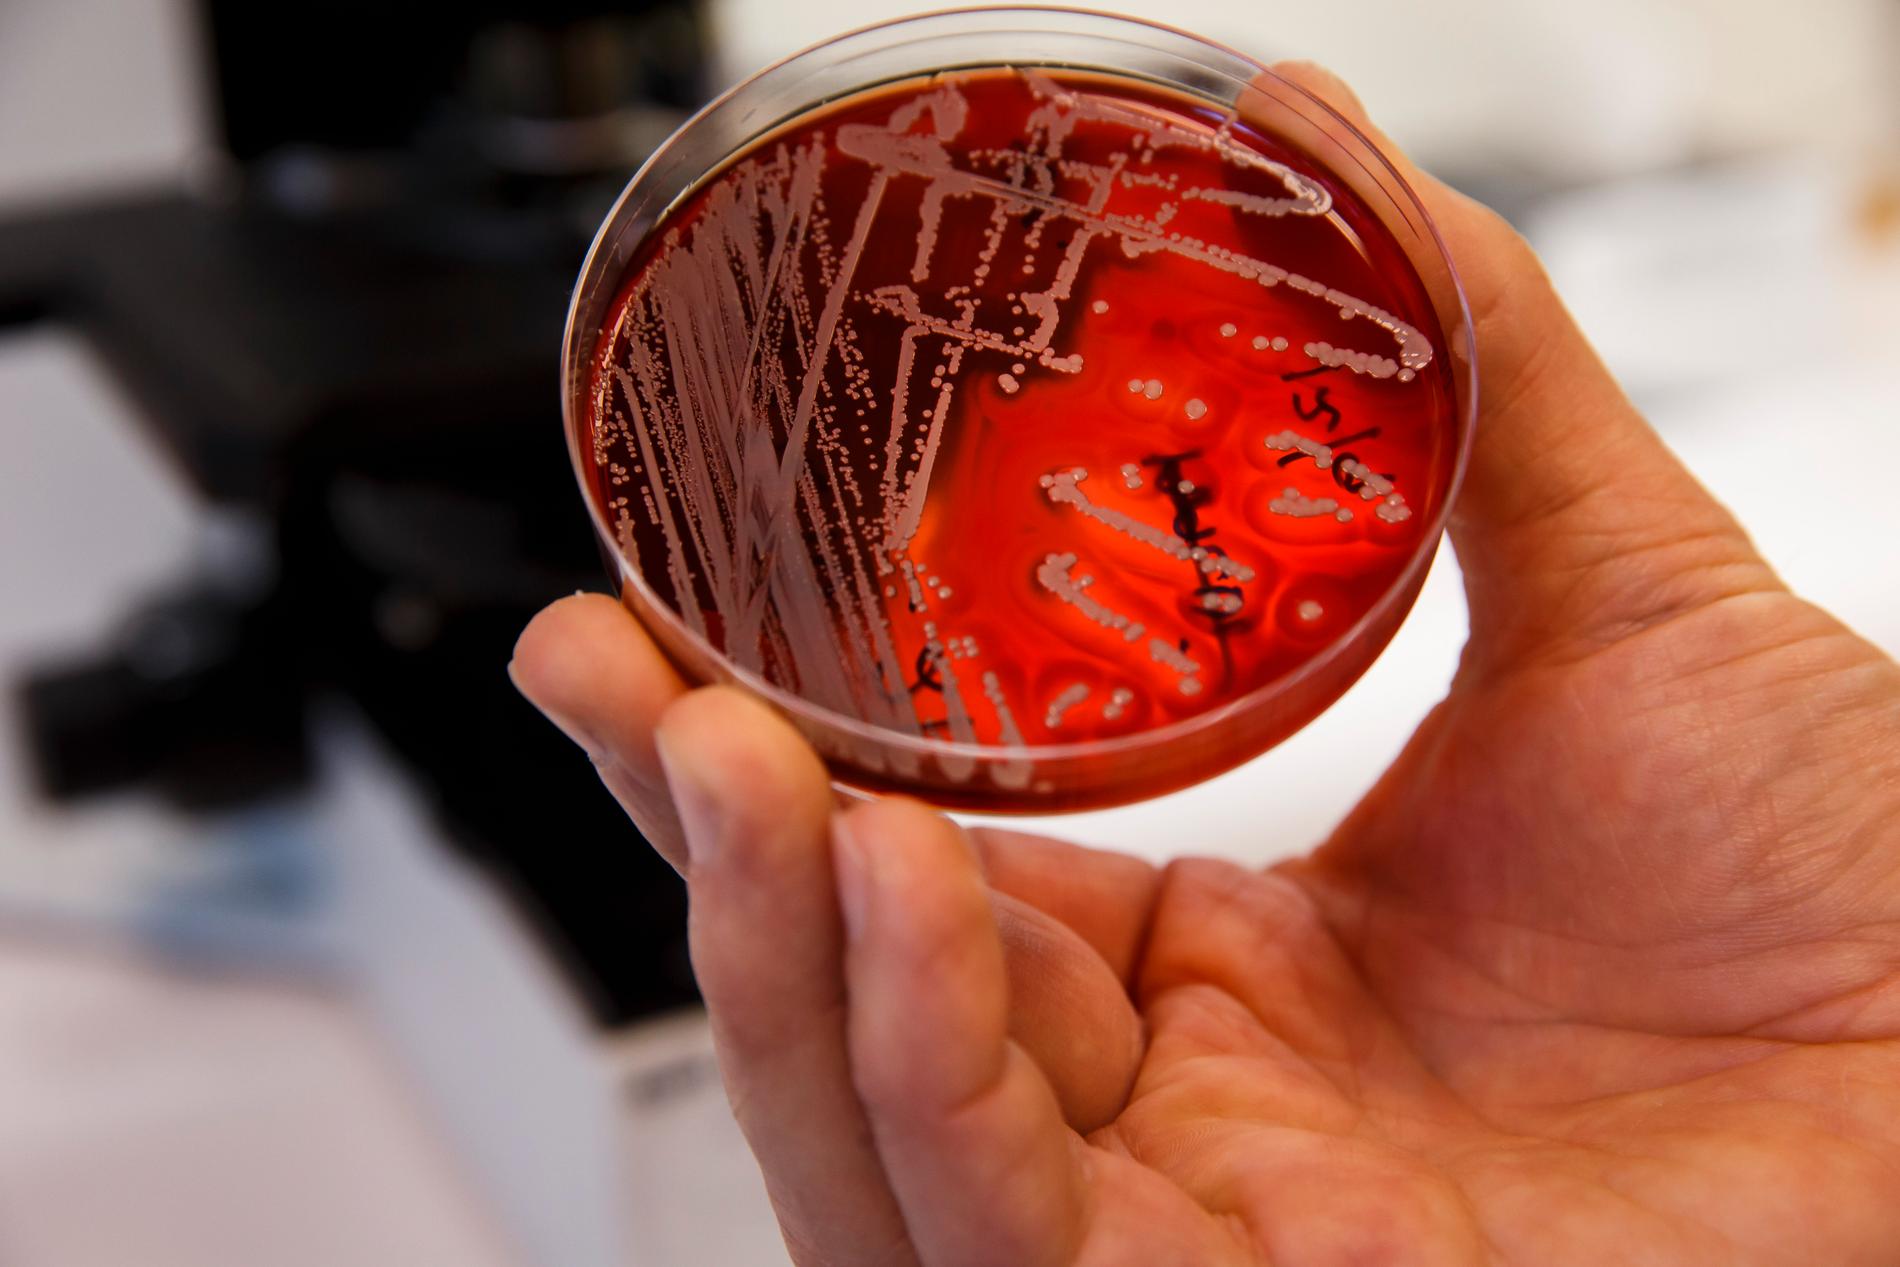 Antibiotikaresistenta bakterier utgör ett allt större hälsoproblem världen över. Behovet av nya antibiotikavarianter är stort.